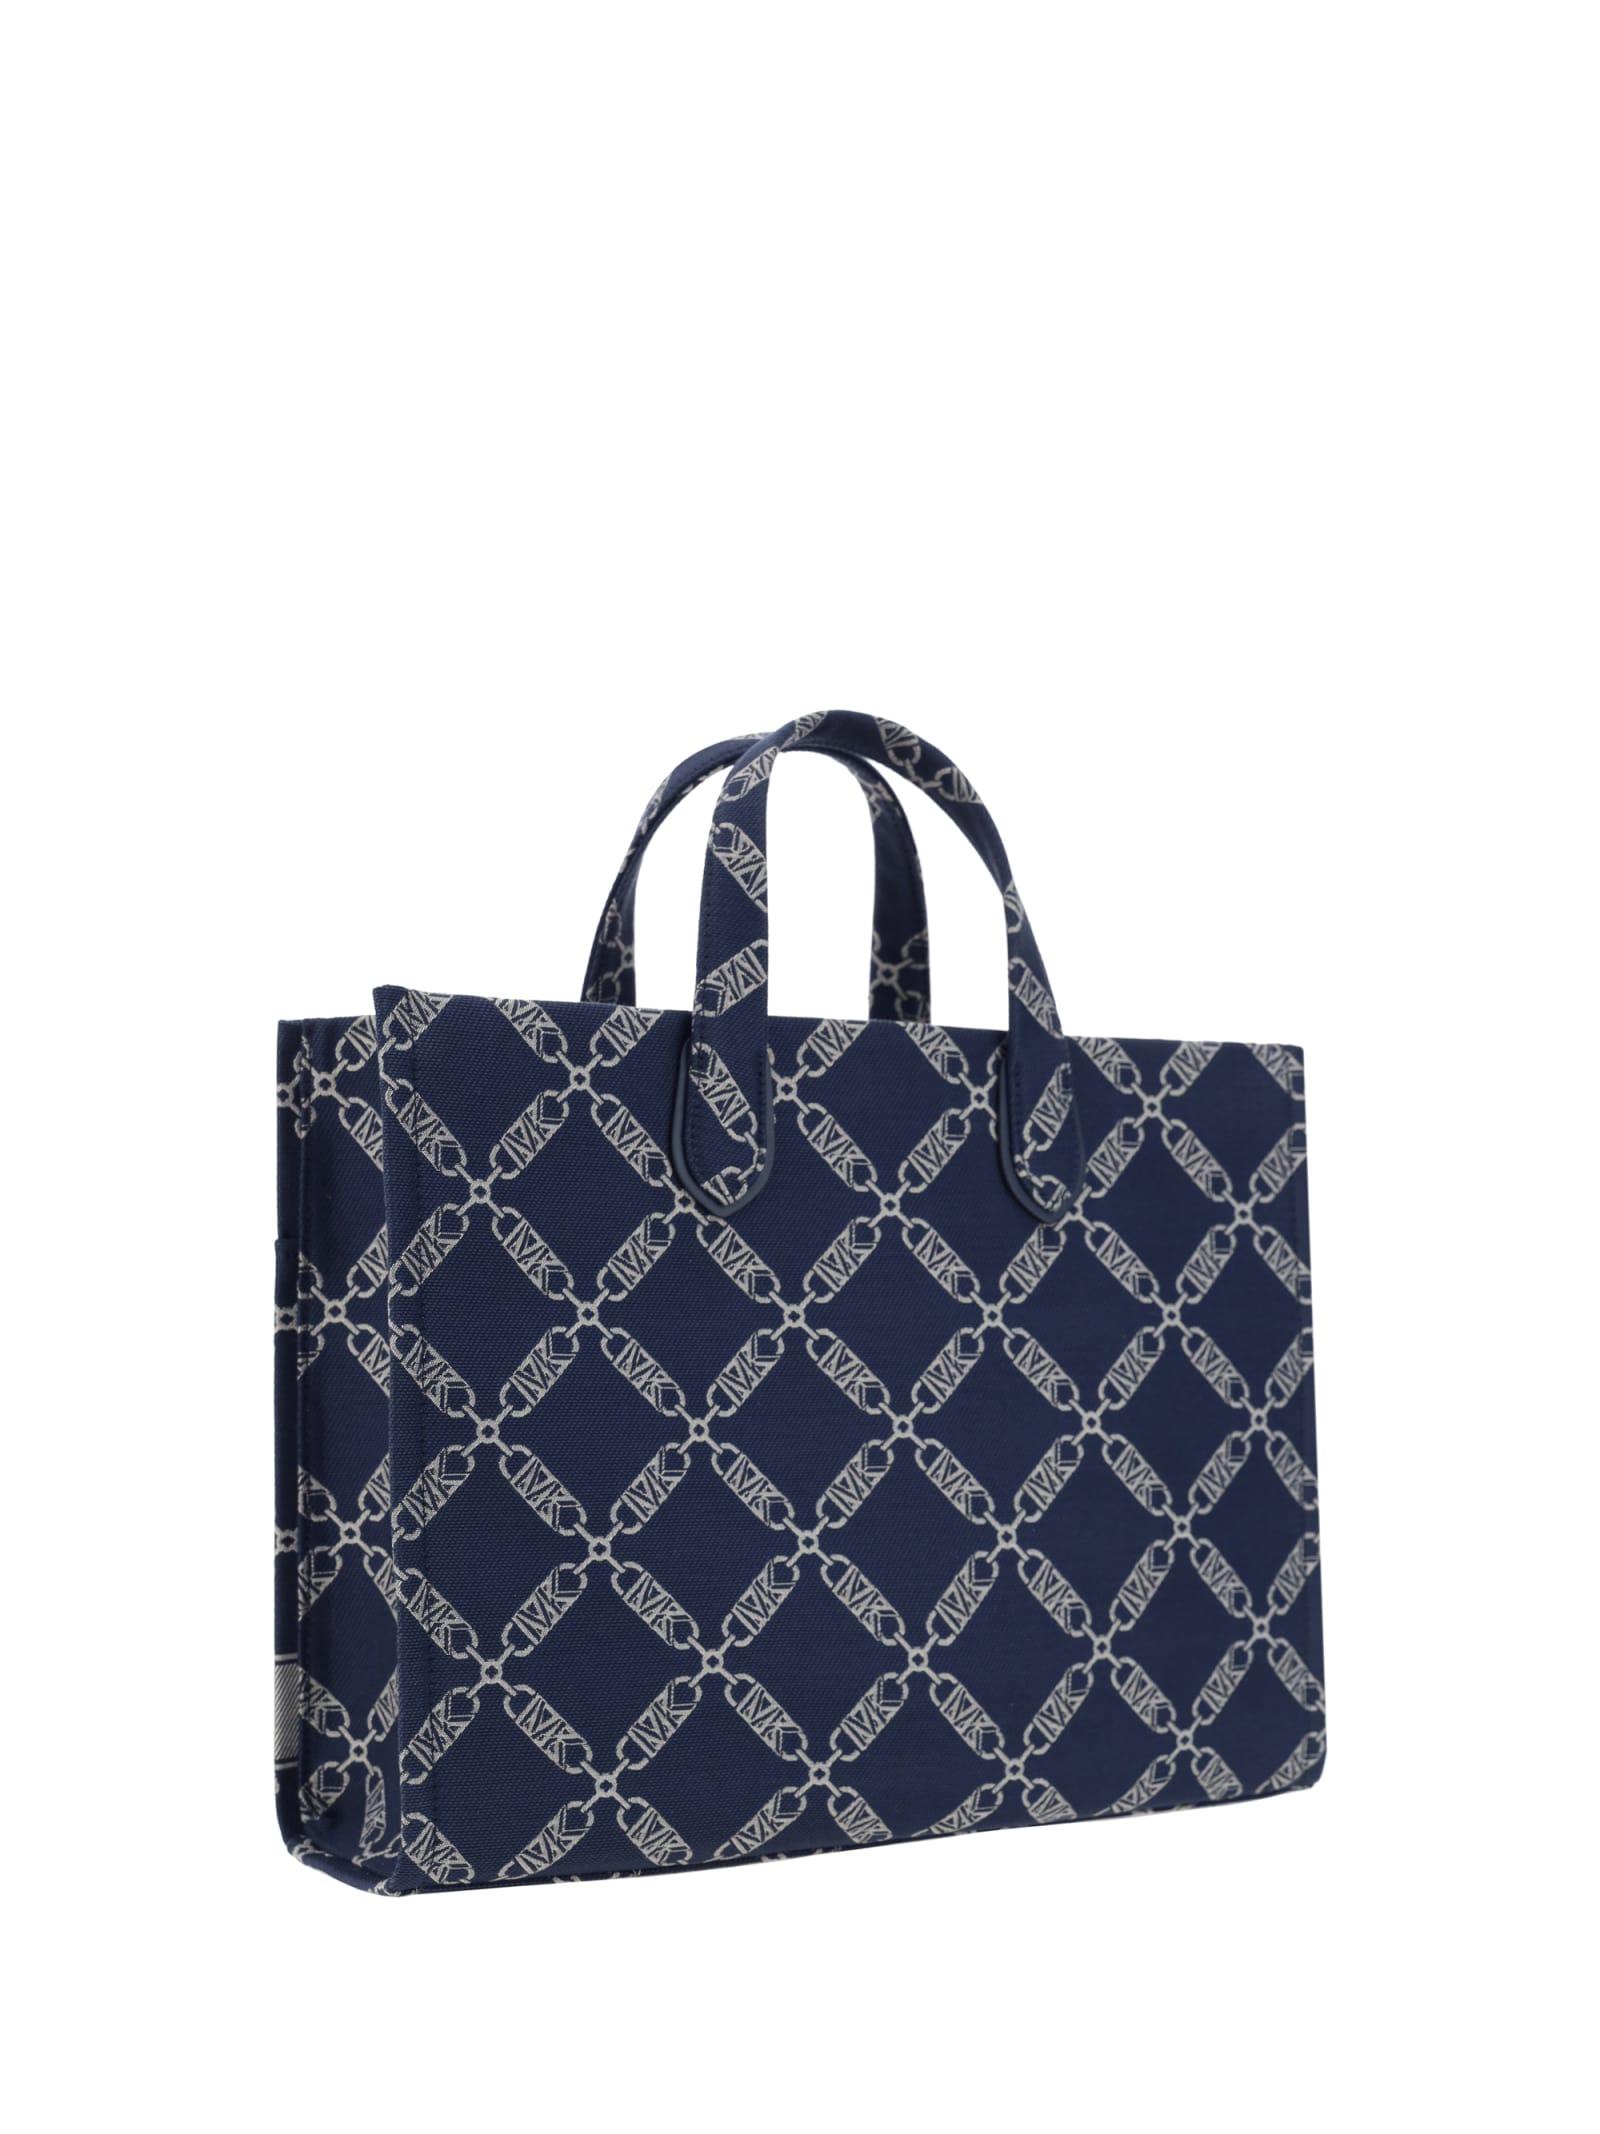 Vintage GUESS Blue Tote Bag Monogram Pattern Shoulder Bag -  Finland